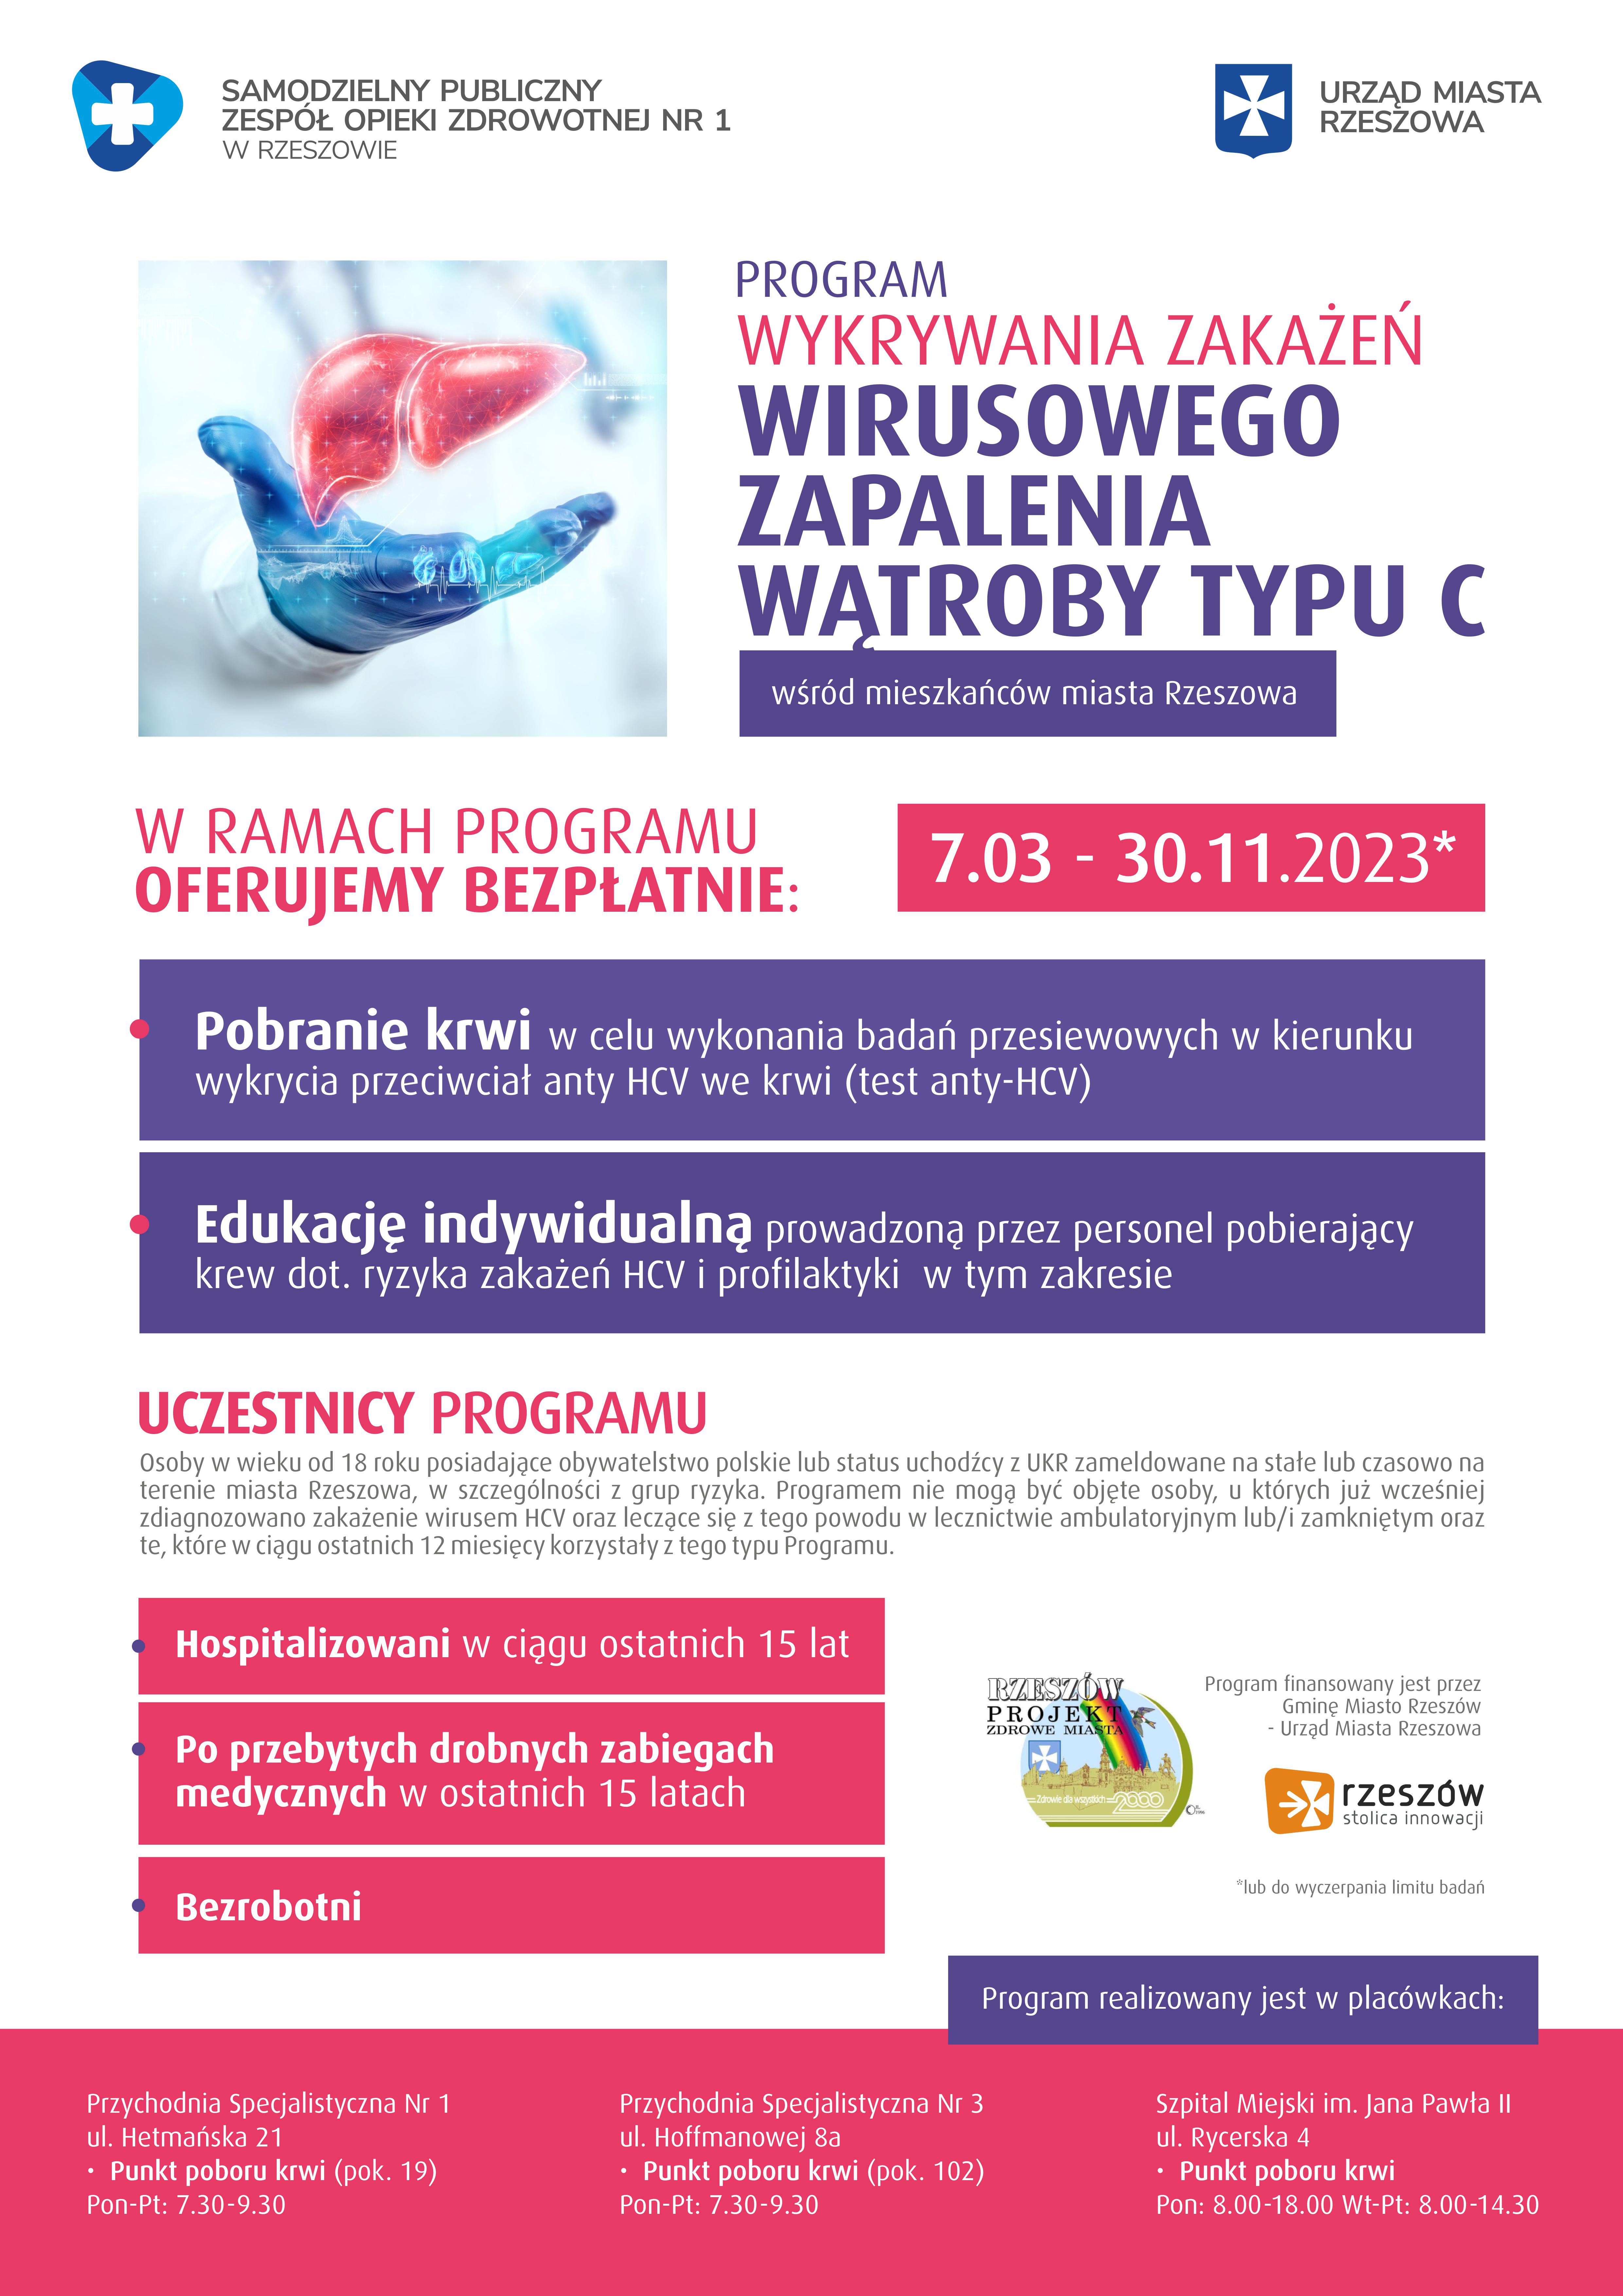 „Programu wykrywania zakażeń wirusowego zapalenia wątroby typu C, wśród mieszkańców miasta Rzeszowa”